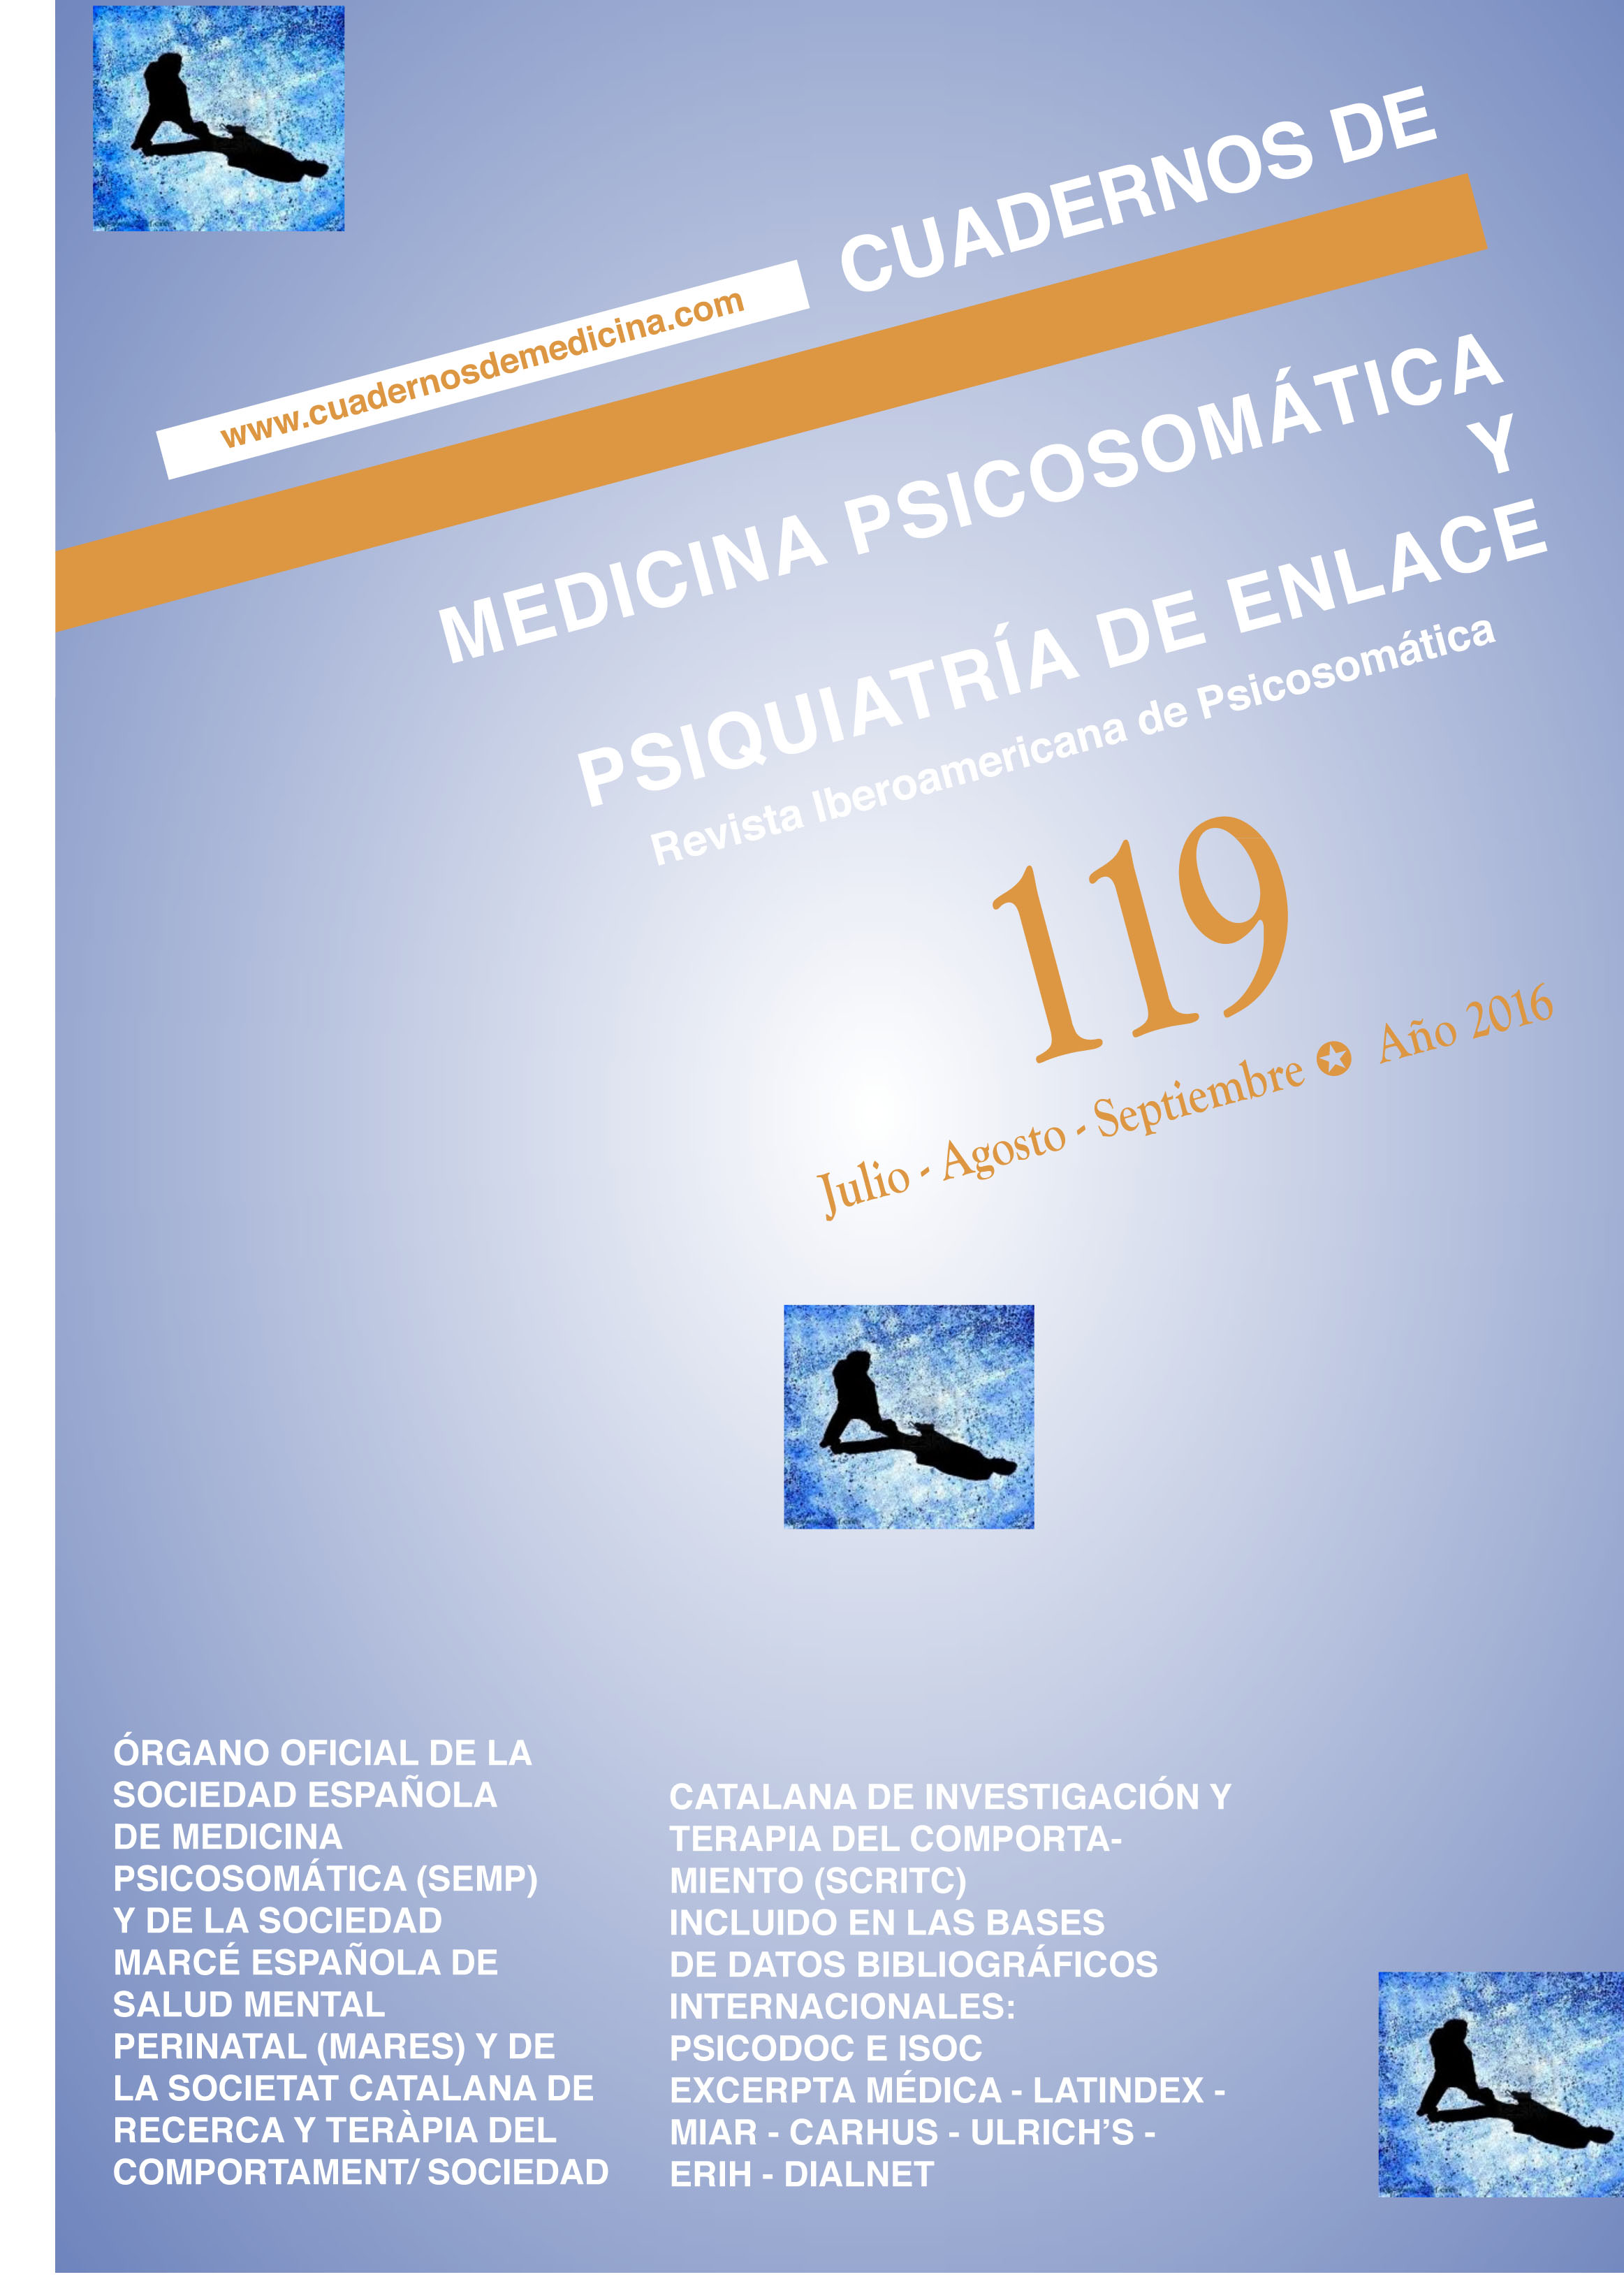 Cuadernos de Medicina Psicosomática y Psiquiatría de Enlace Nº 119